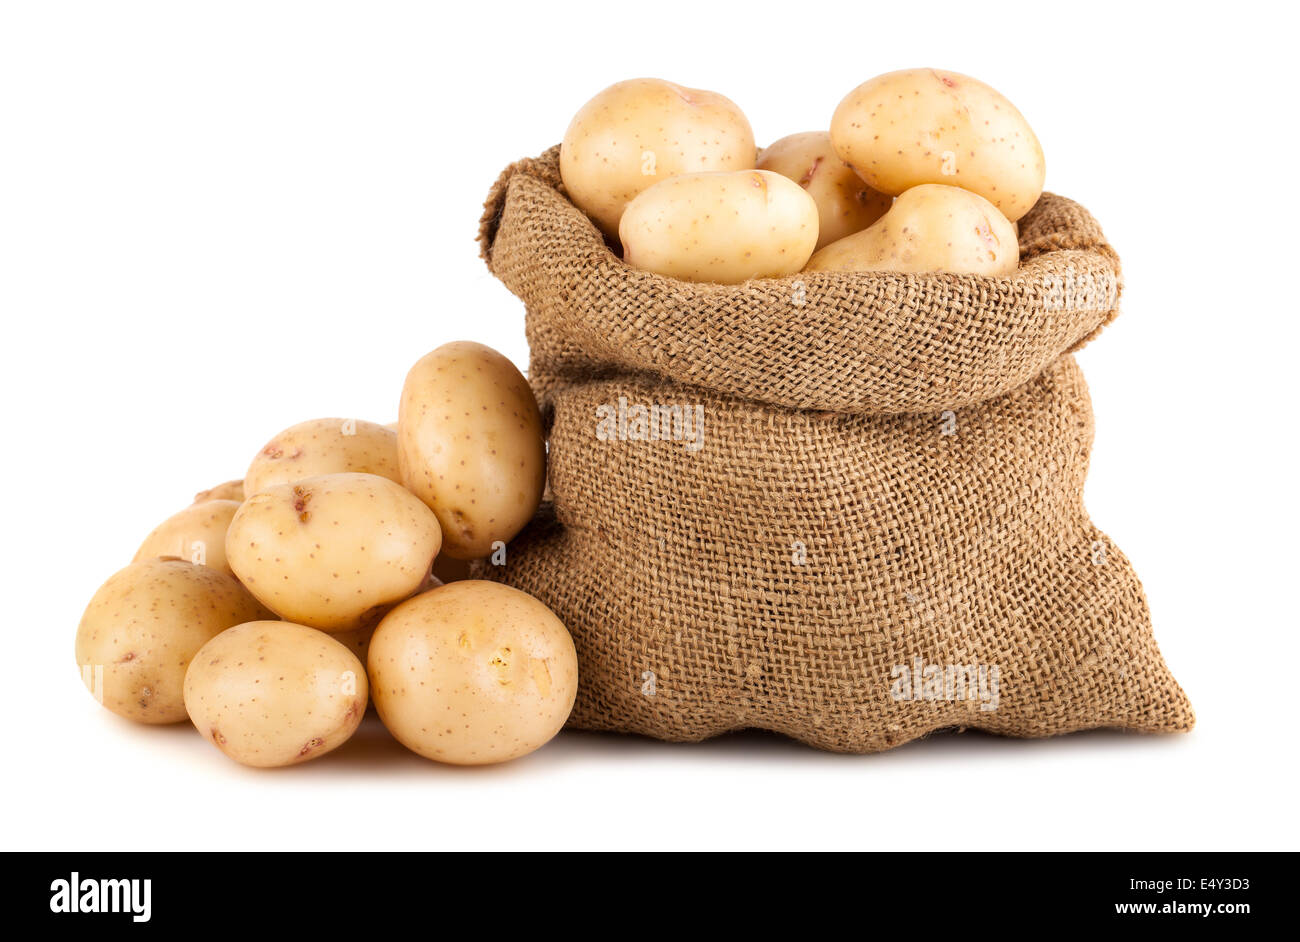 Ripe potato in burlap sack Stock Photo